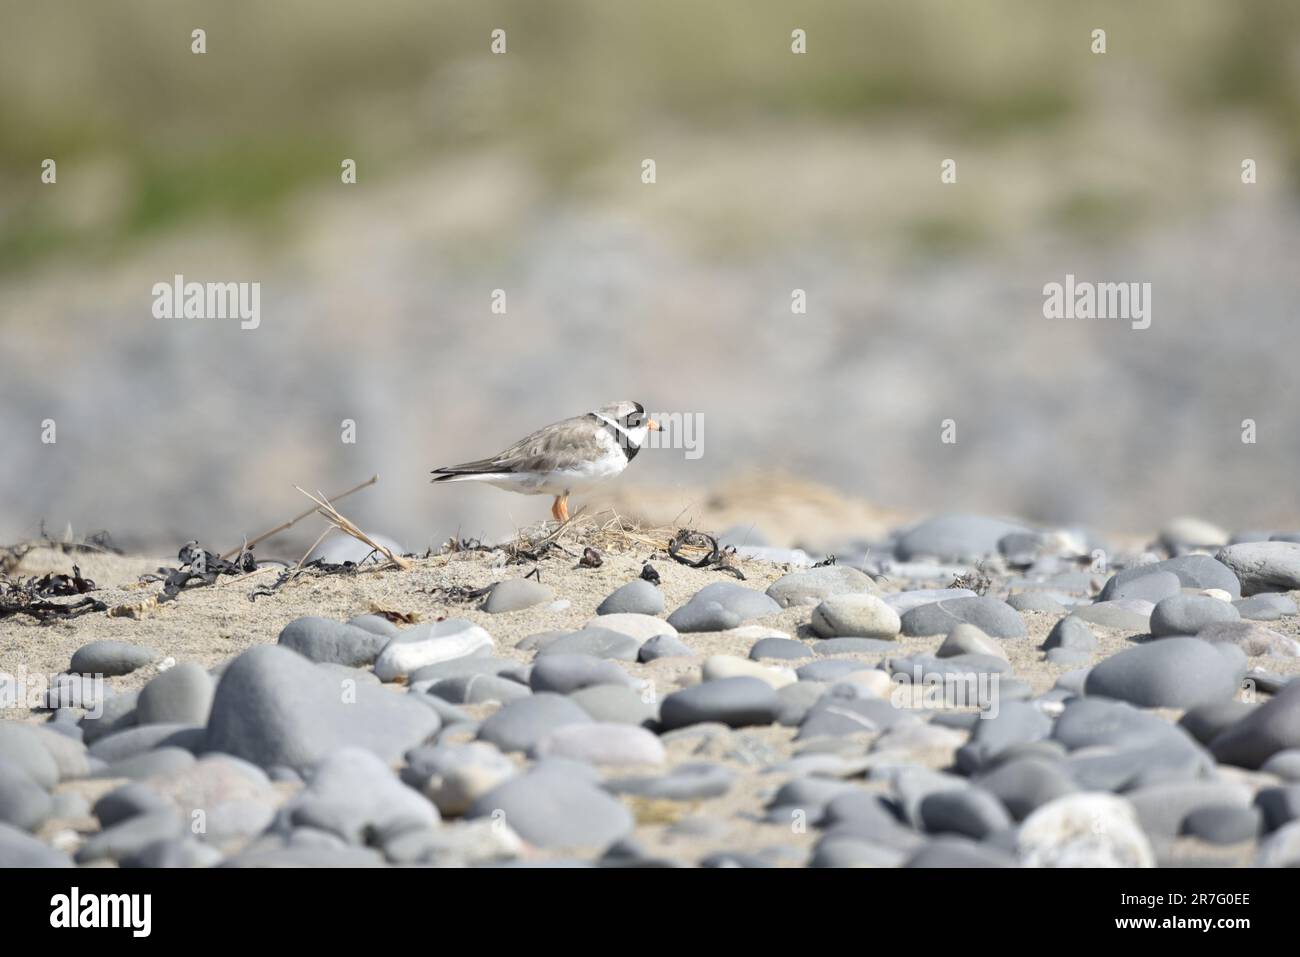 Common ringed Plover (Charadrius hiaticula) in piedi in cima a un Pebble e Sand Beach Bank a profilo destro, leggermente a sinistra di immagine, nel Regno Unito Foto Stock